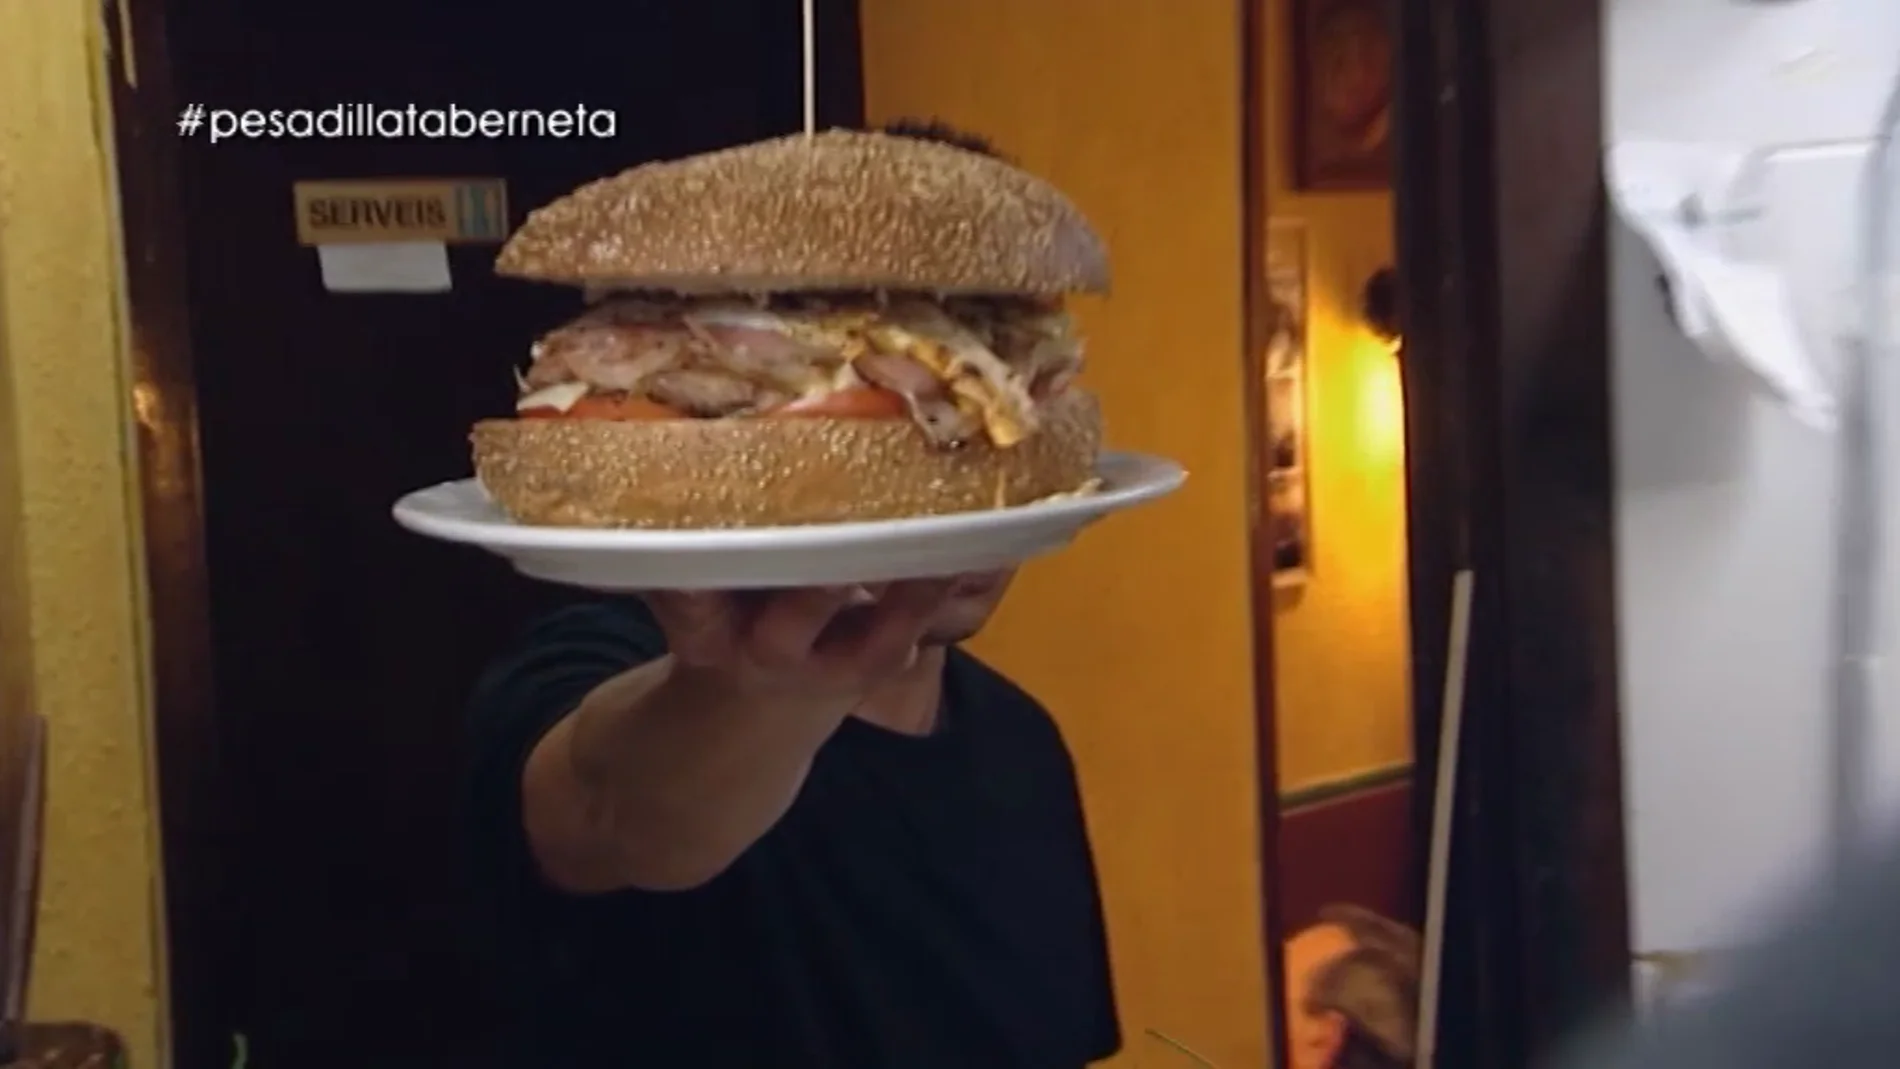 La hamburguesa de un kilo de 'La Taberneta'